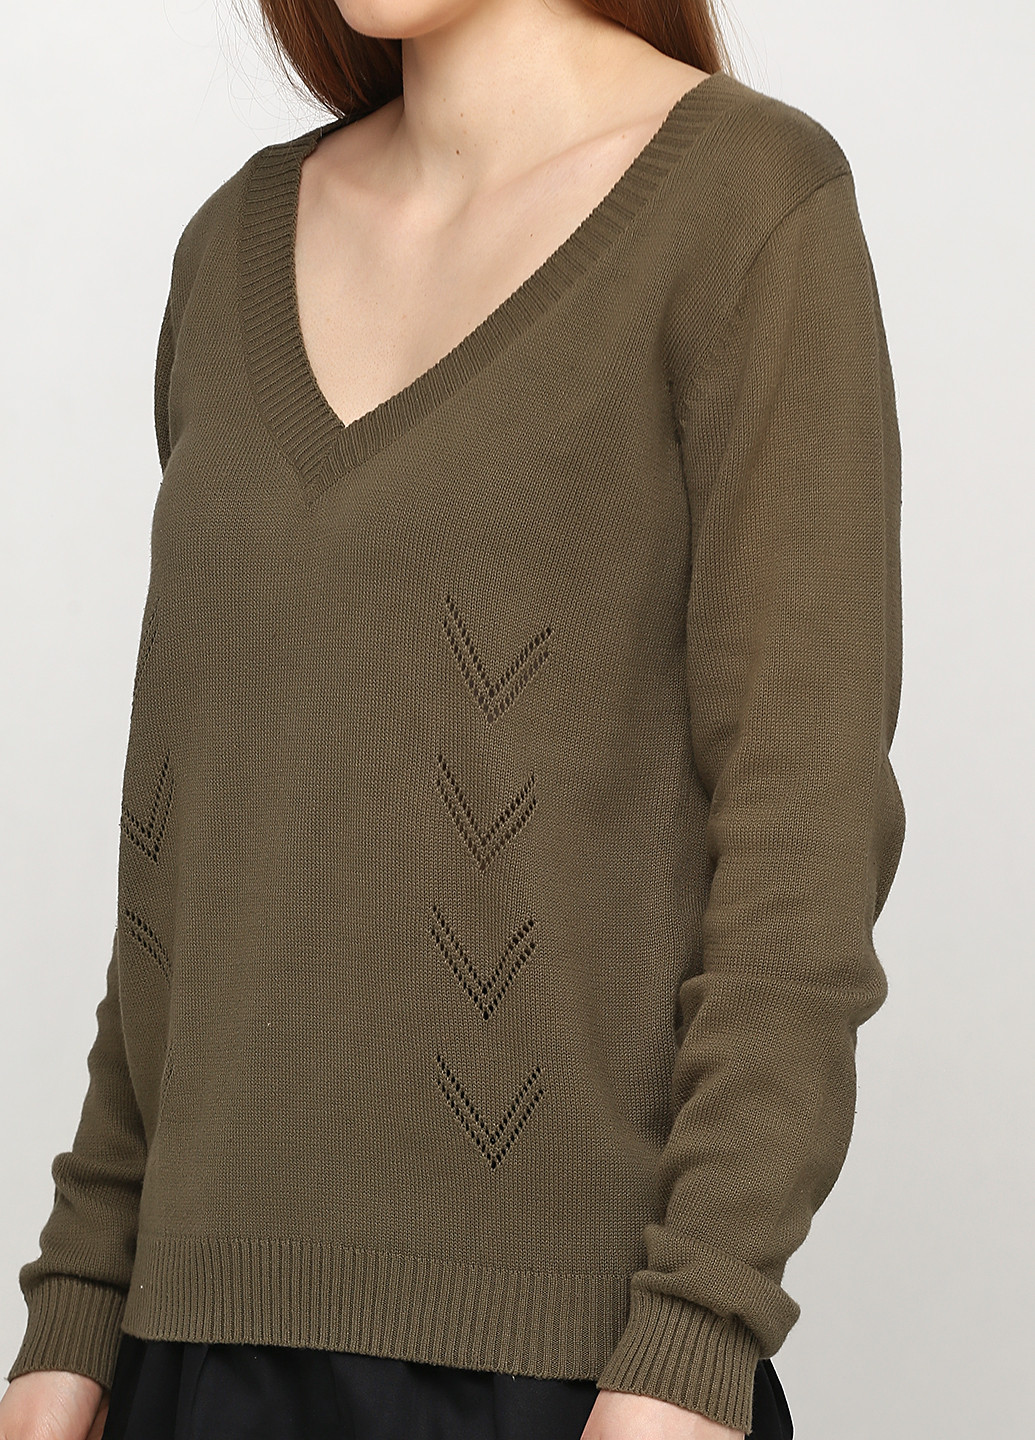 Оливковый (хаки) демисезонный пуловер пуловер Vero Moda